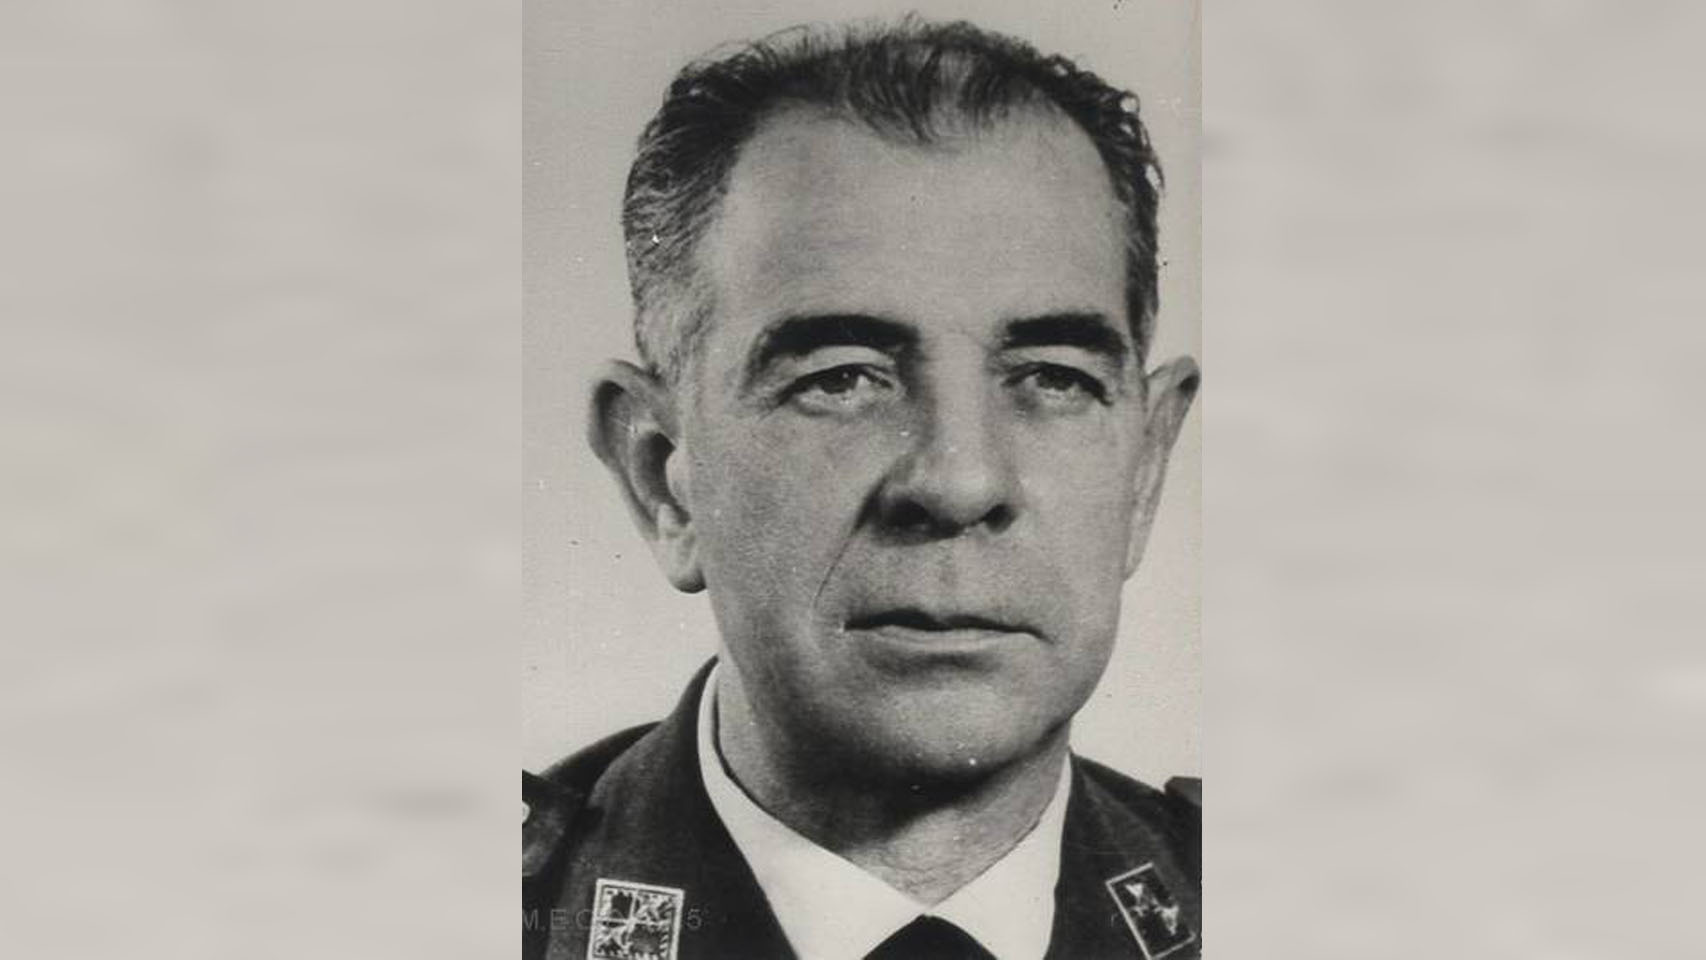 El tío de Ana, Julio Salvador y Díaz-Benjumea, fue ministro del Aire durante la dictadura franquista.